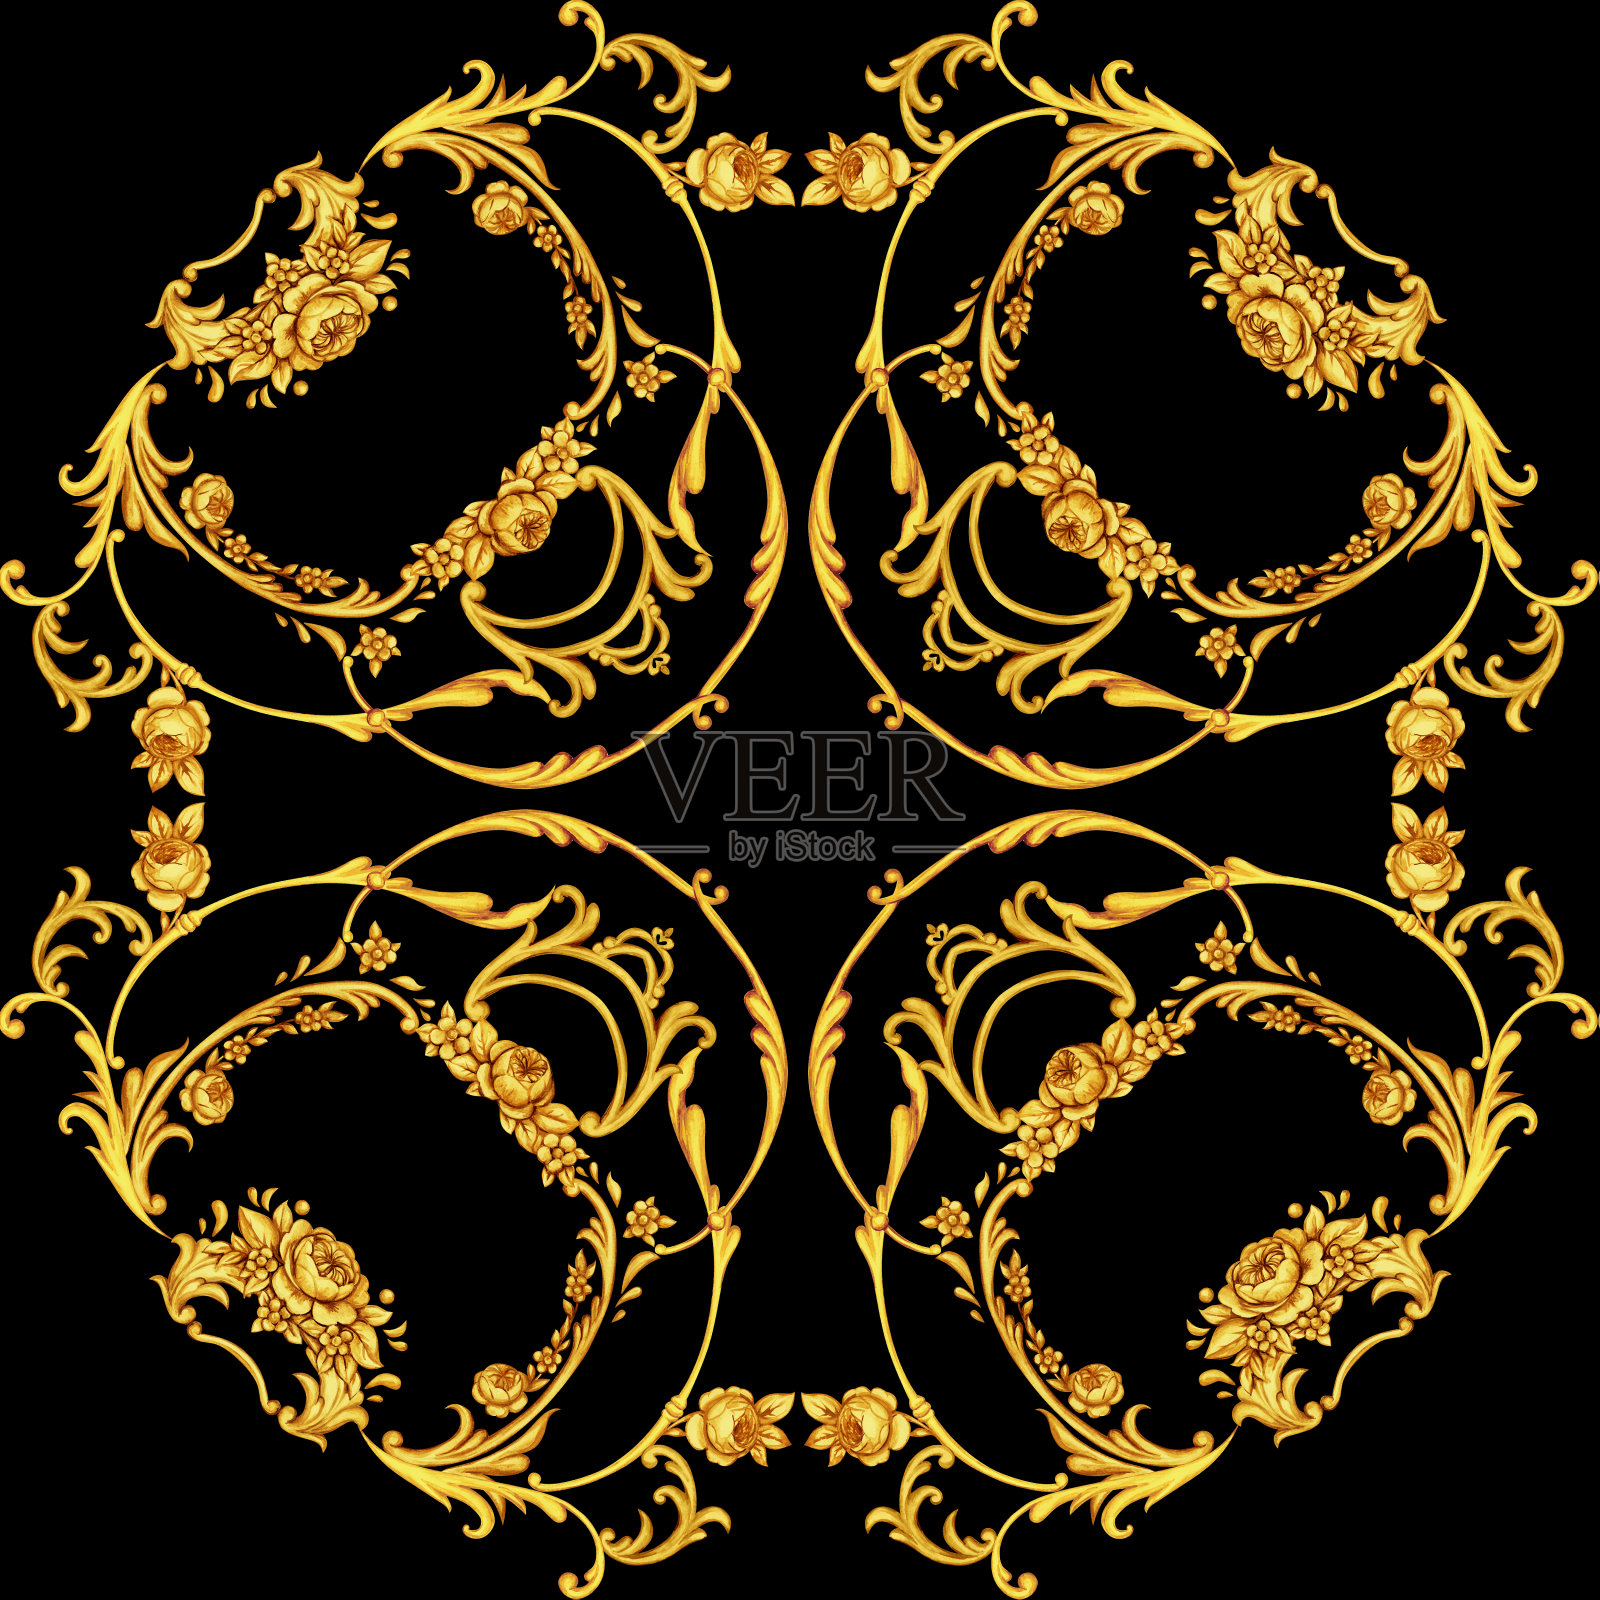 巴罗克风格的金色卷轴头巾表面设计插画图片素材